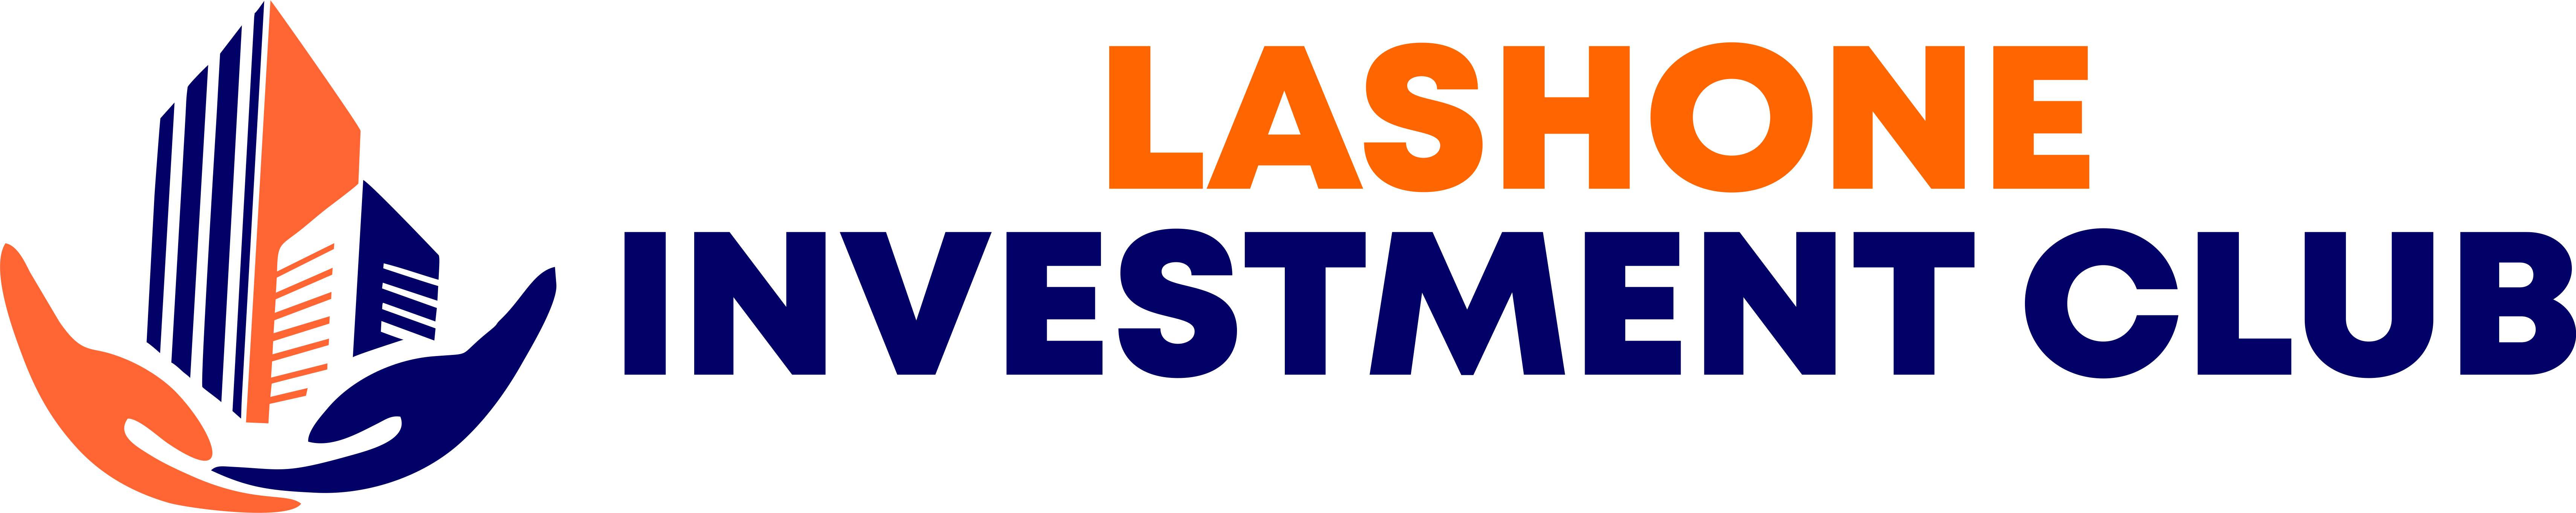 Lashone investment club